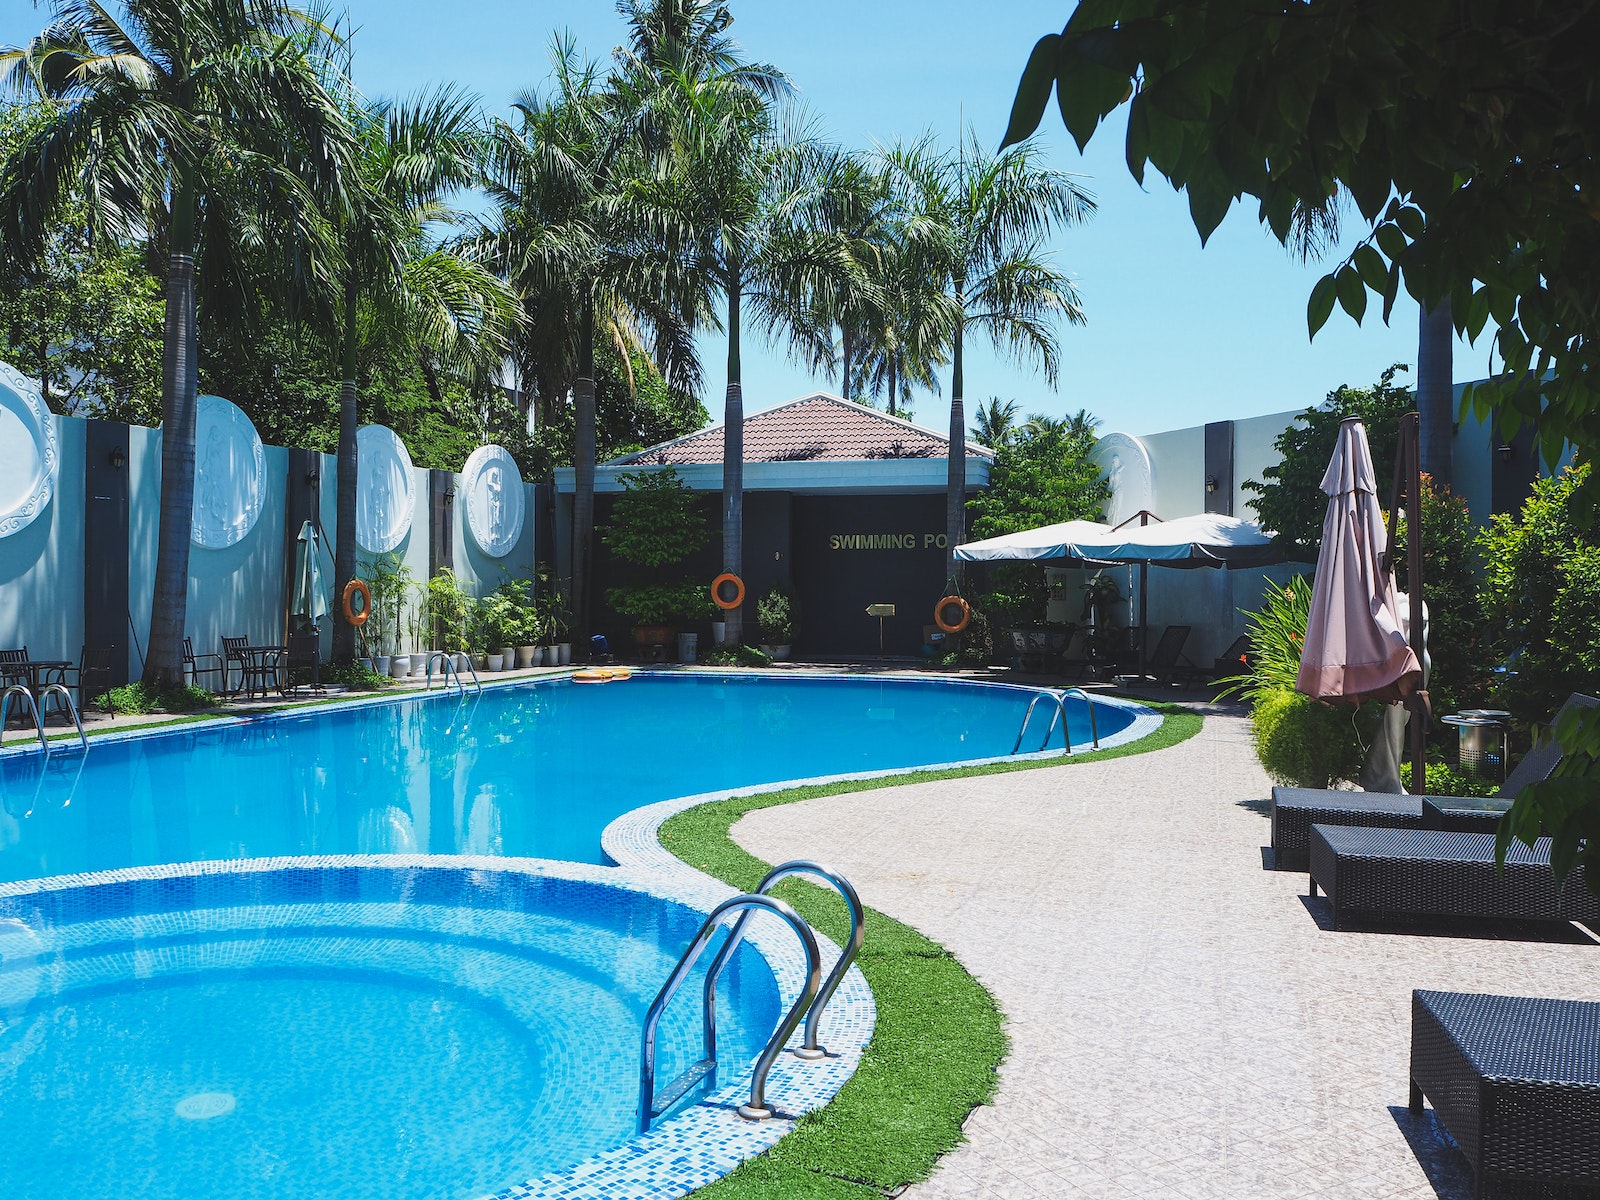 Piscina al aire libre con tumbonas en territorio de hotel tropical con palmeras verdes contra el cielo azul sin nubes